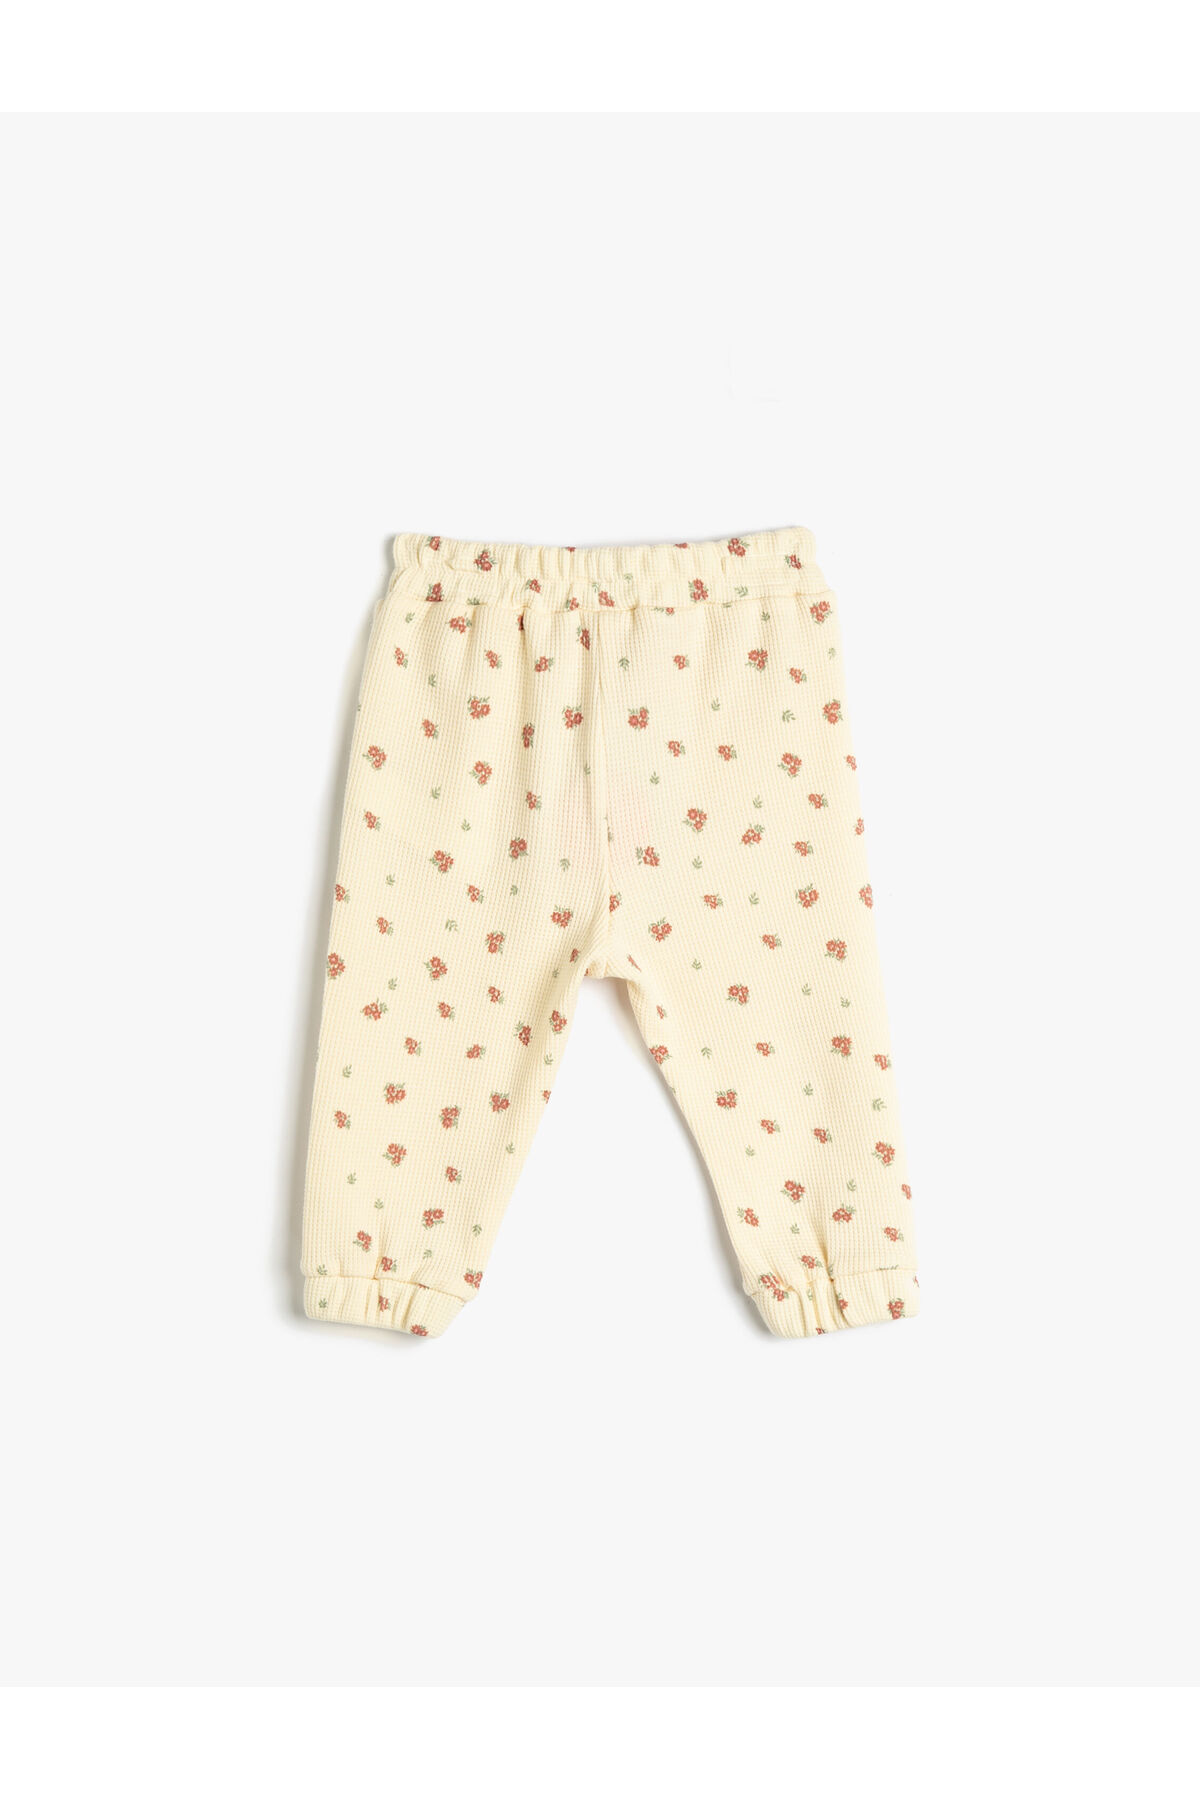 Koton Флорални панталони за джогър с текстурирана еластична талия, памук